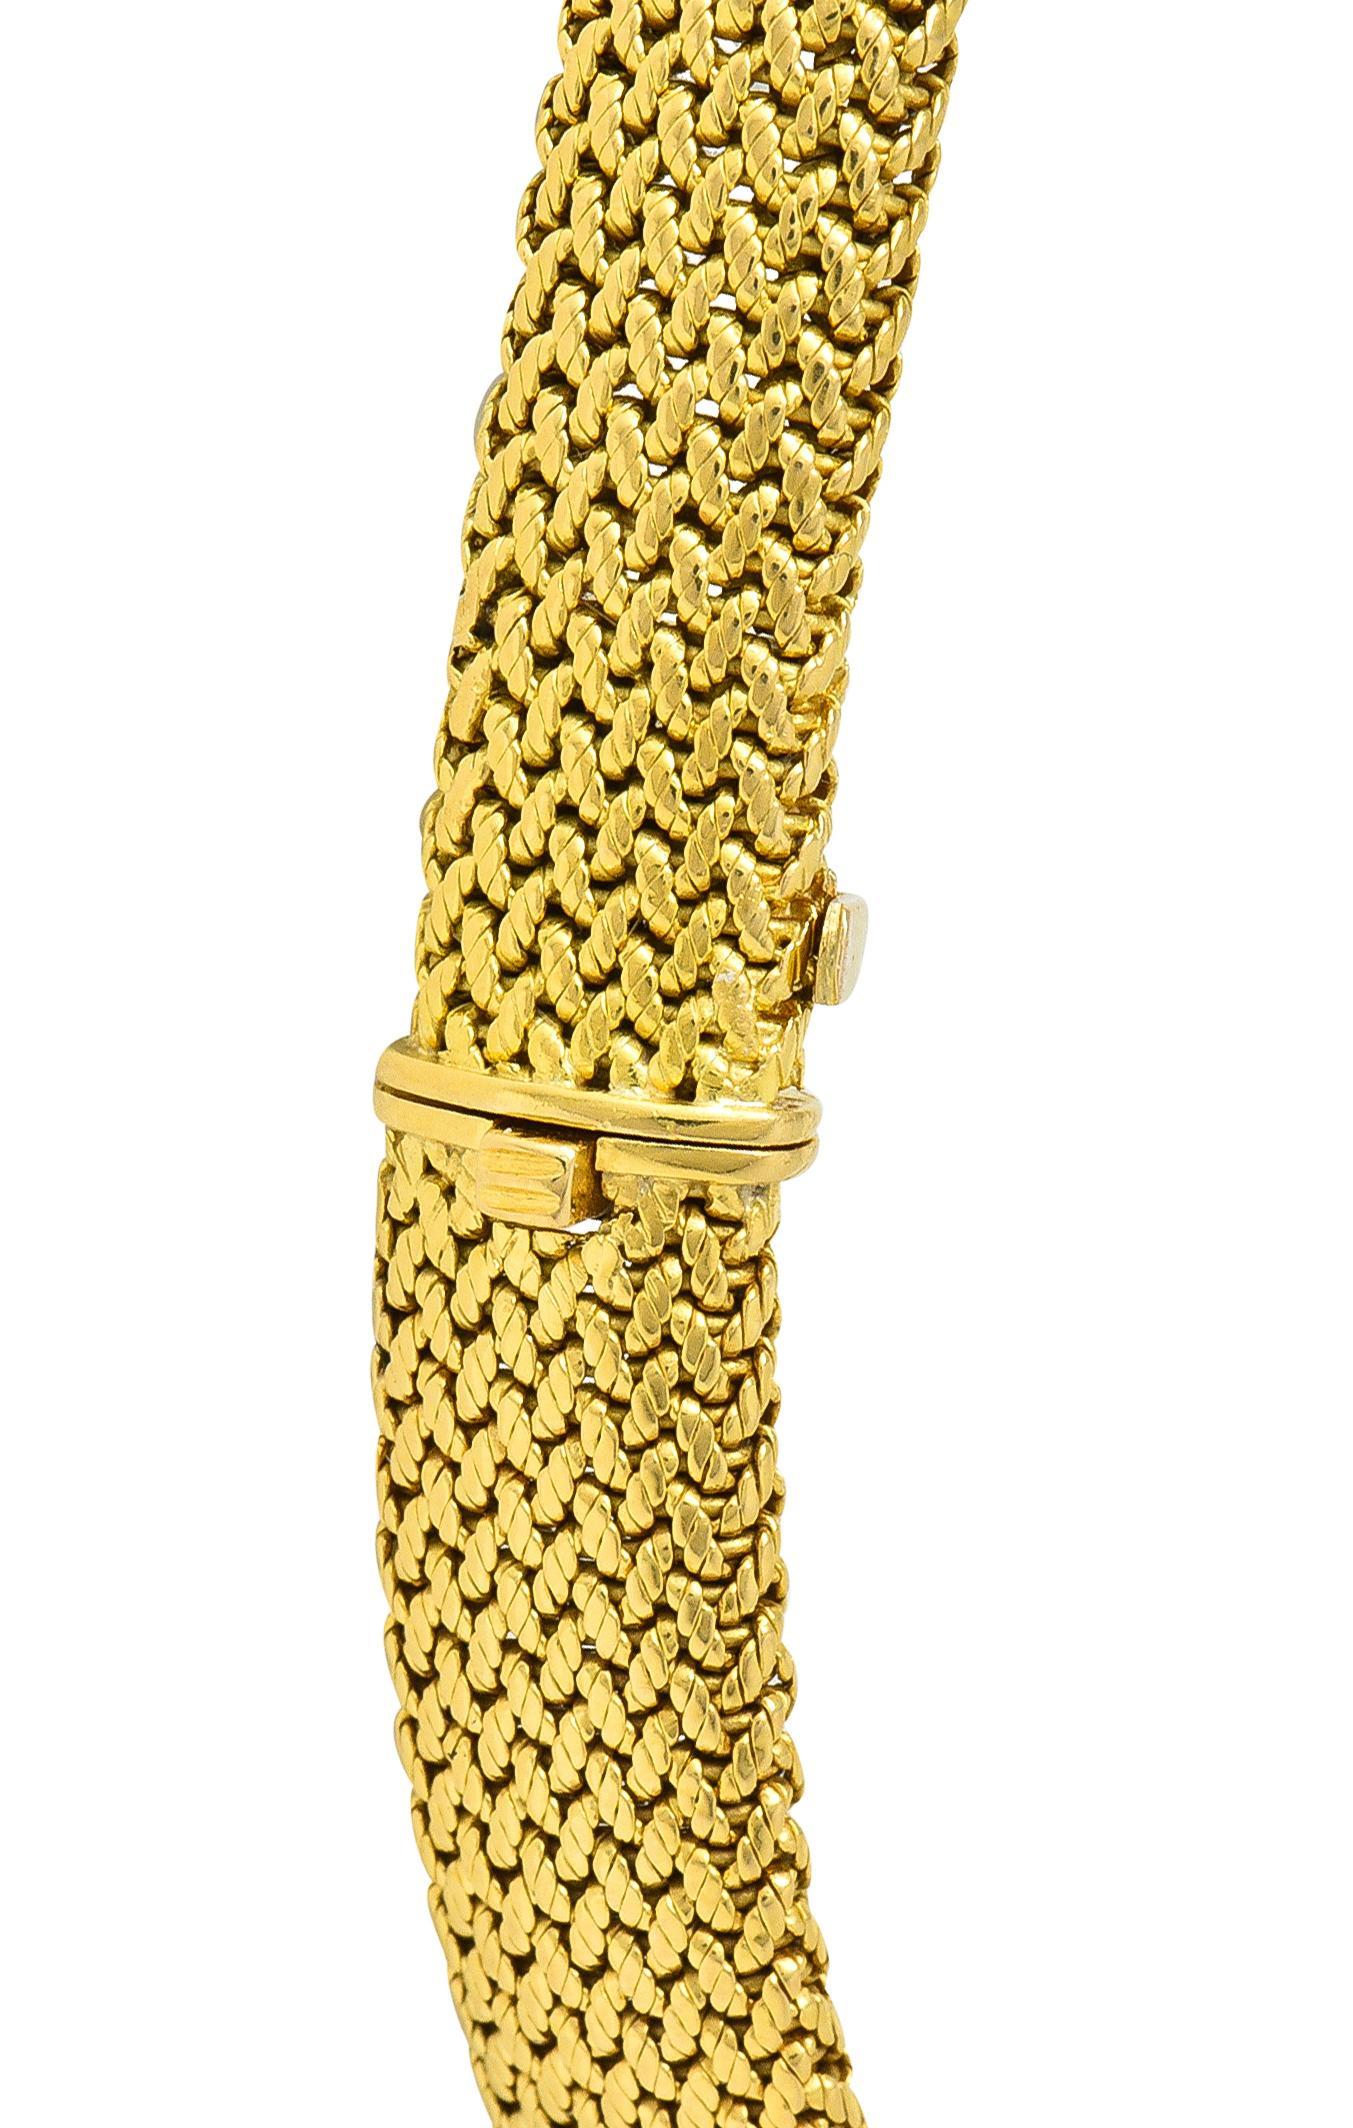 Van Cleef & Arpels Georges Lenfant 1940s Sapphire Diamond 18 Karat Gold Necklace For Sale 5